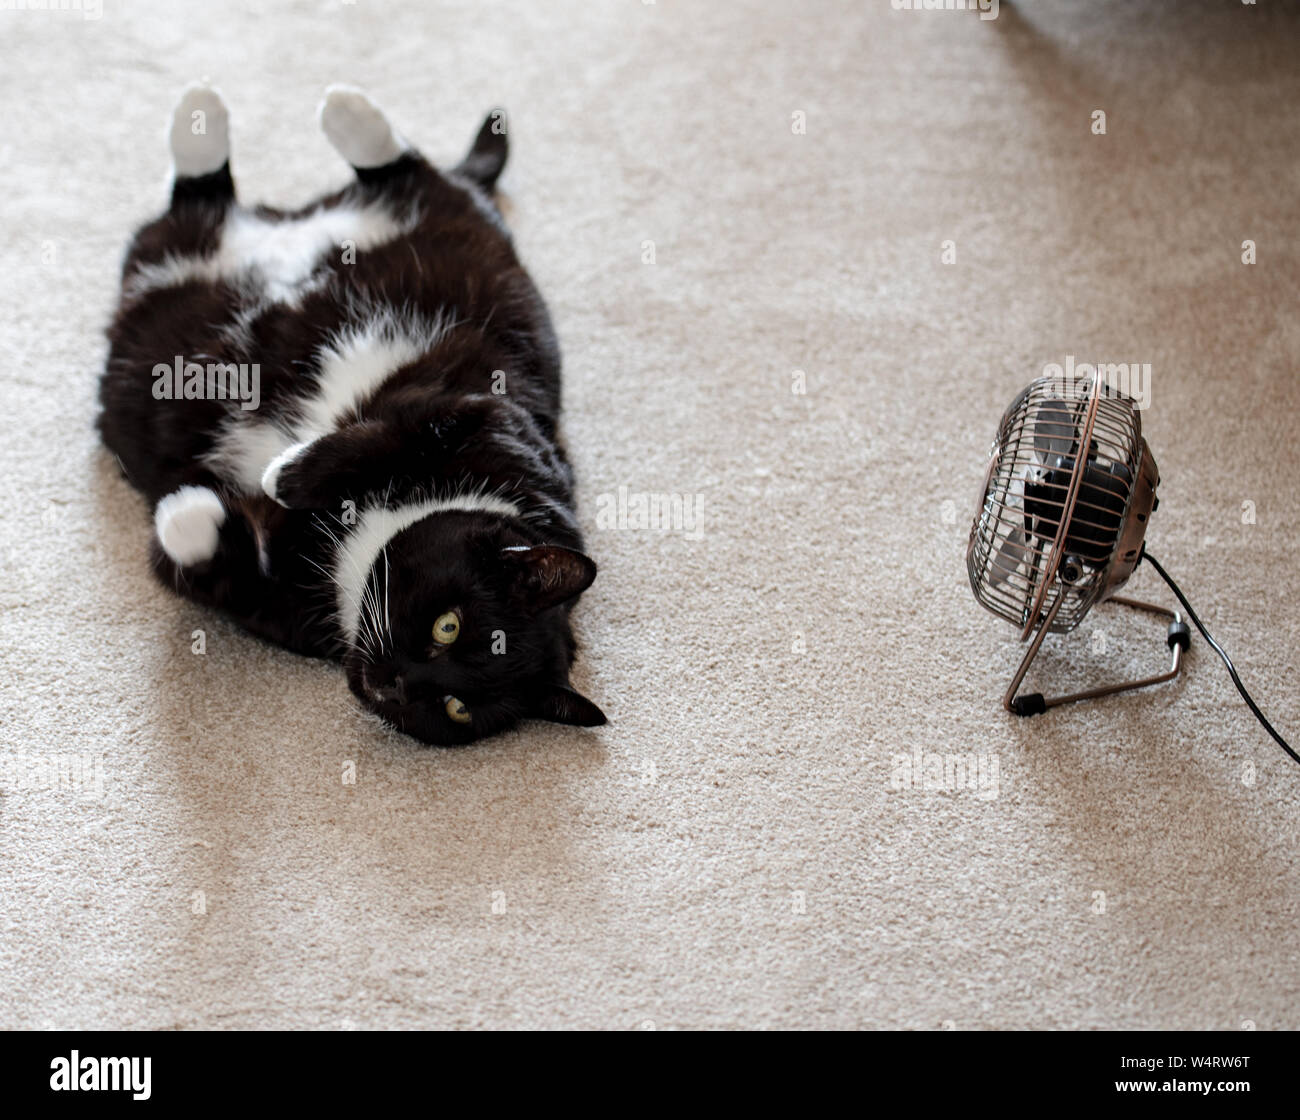 Aficionado a los gatos fotografías e imágenes de alta resolución - Alamy